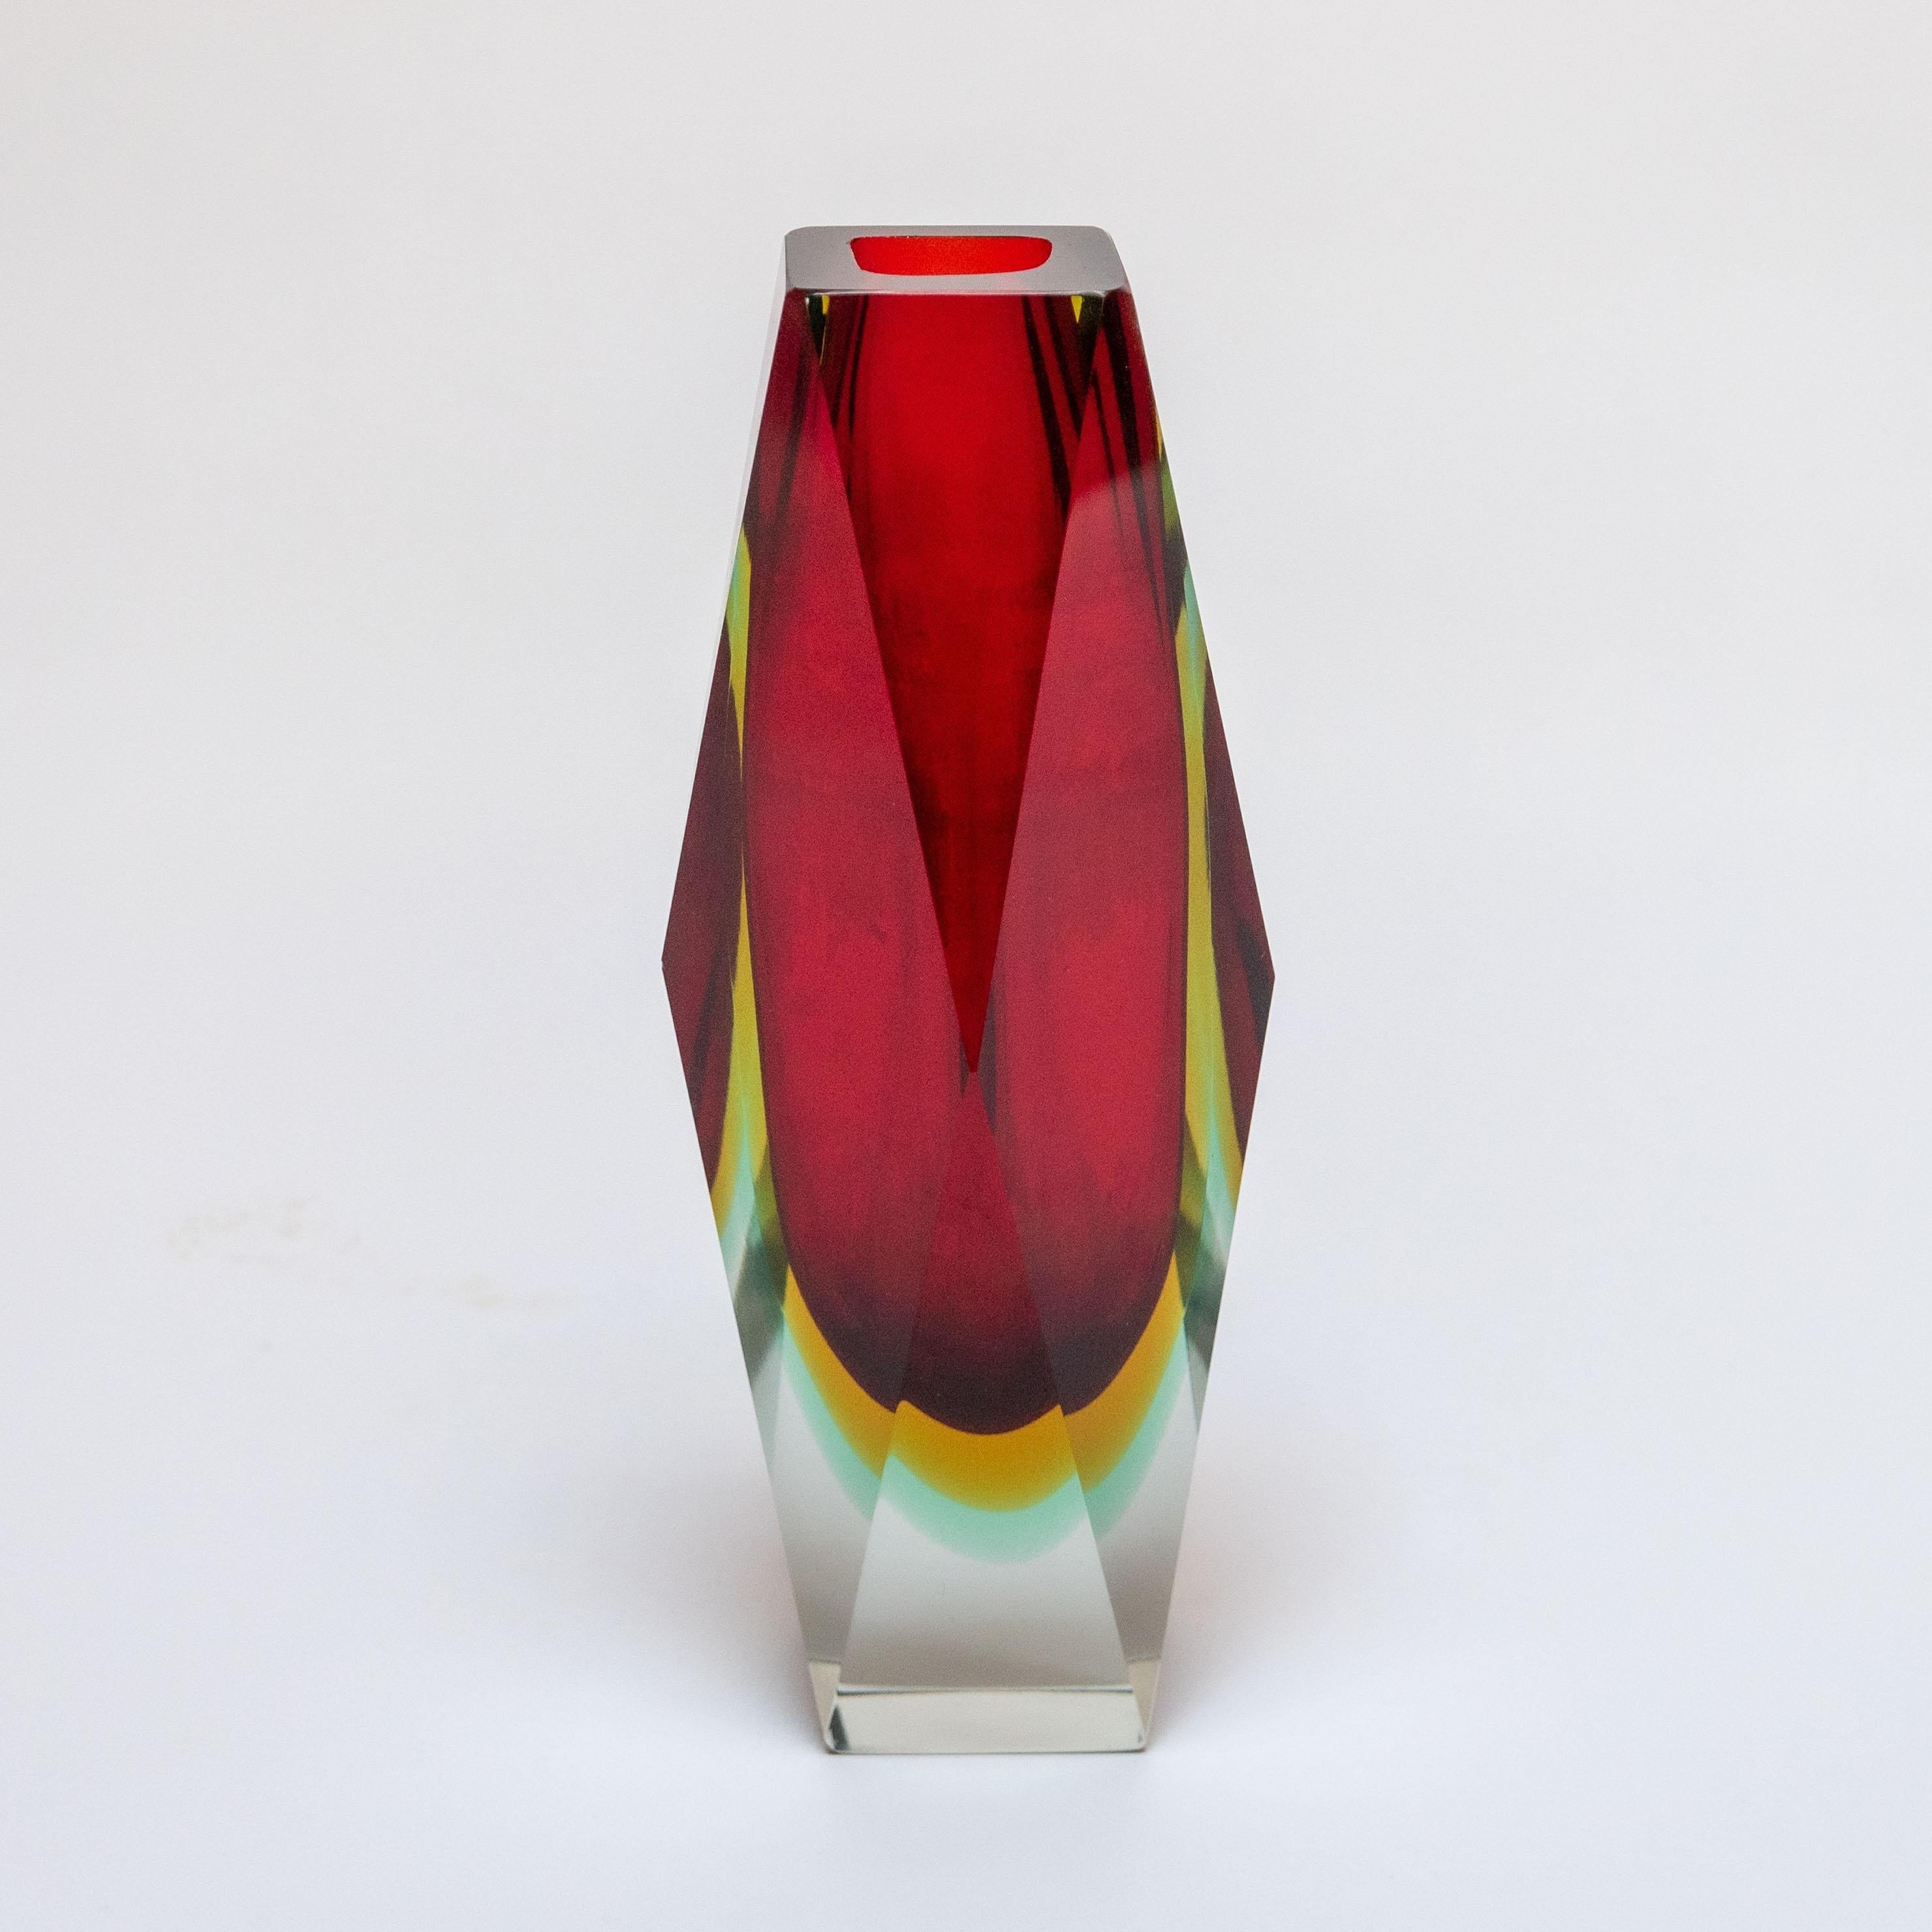 Flavio Poli, der allgemein als einer der produktivsten und fähigsten Designer von Vasen und Objekten aus Murano-Glas gilt, hat sich mit einigen der einflussreichsten und erfahrensten Glasproduzenten Muranos zusammengetan, um zeitlose Designstücke zu